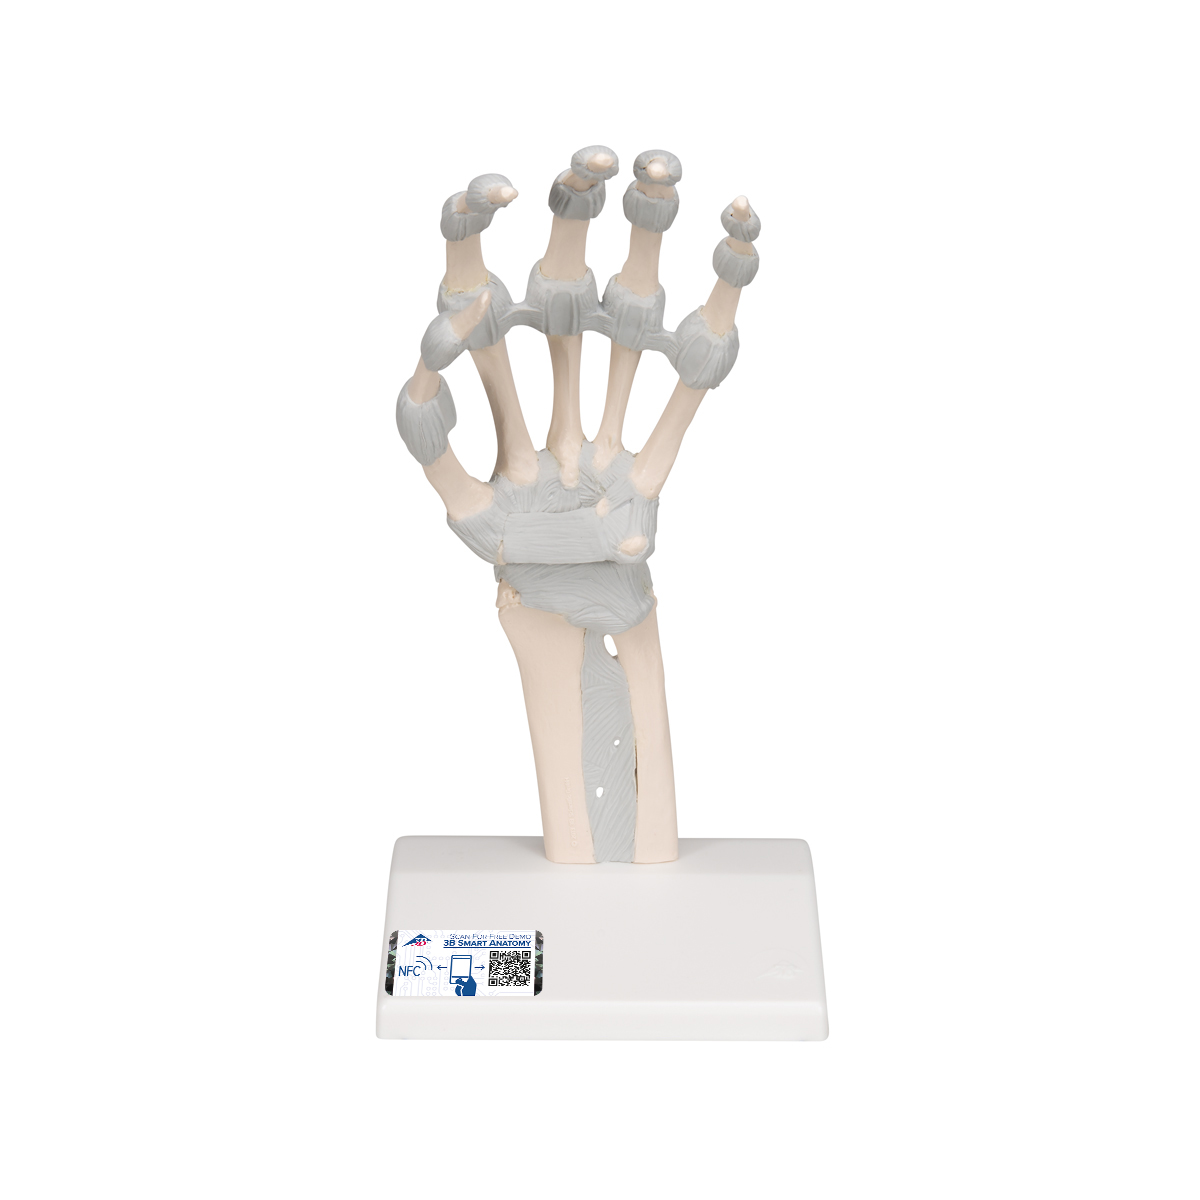 Handskelett Modell mit elastischen Bändern - 3B Smart Anatomy, Bestellnummer 1013683, M36, 3B Scientific